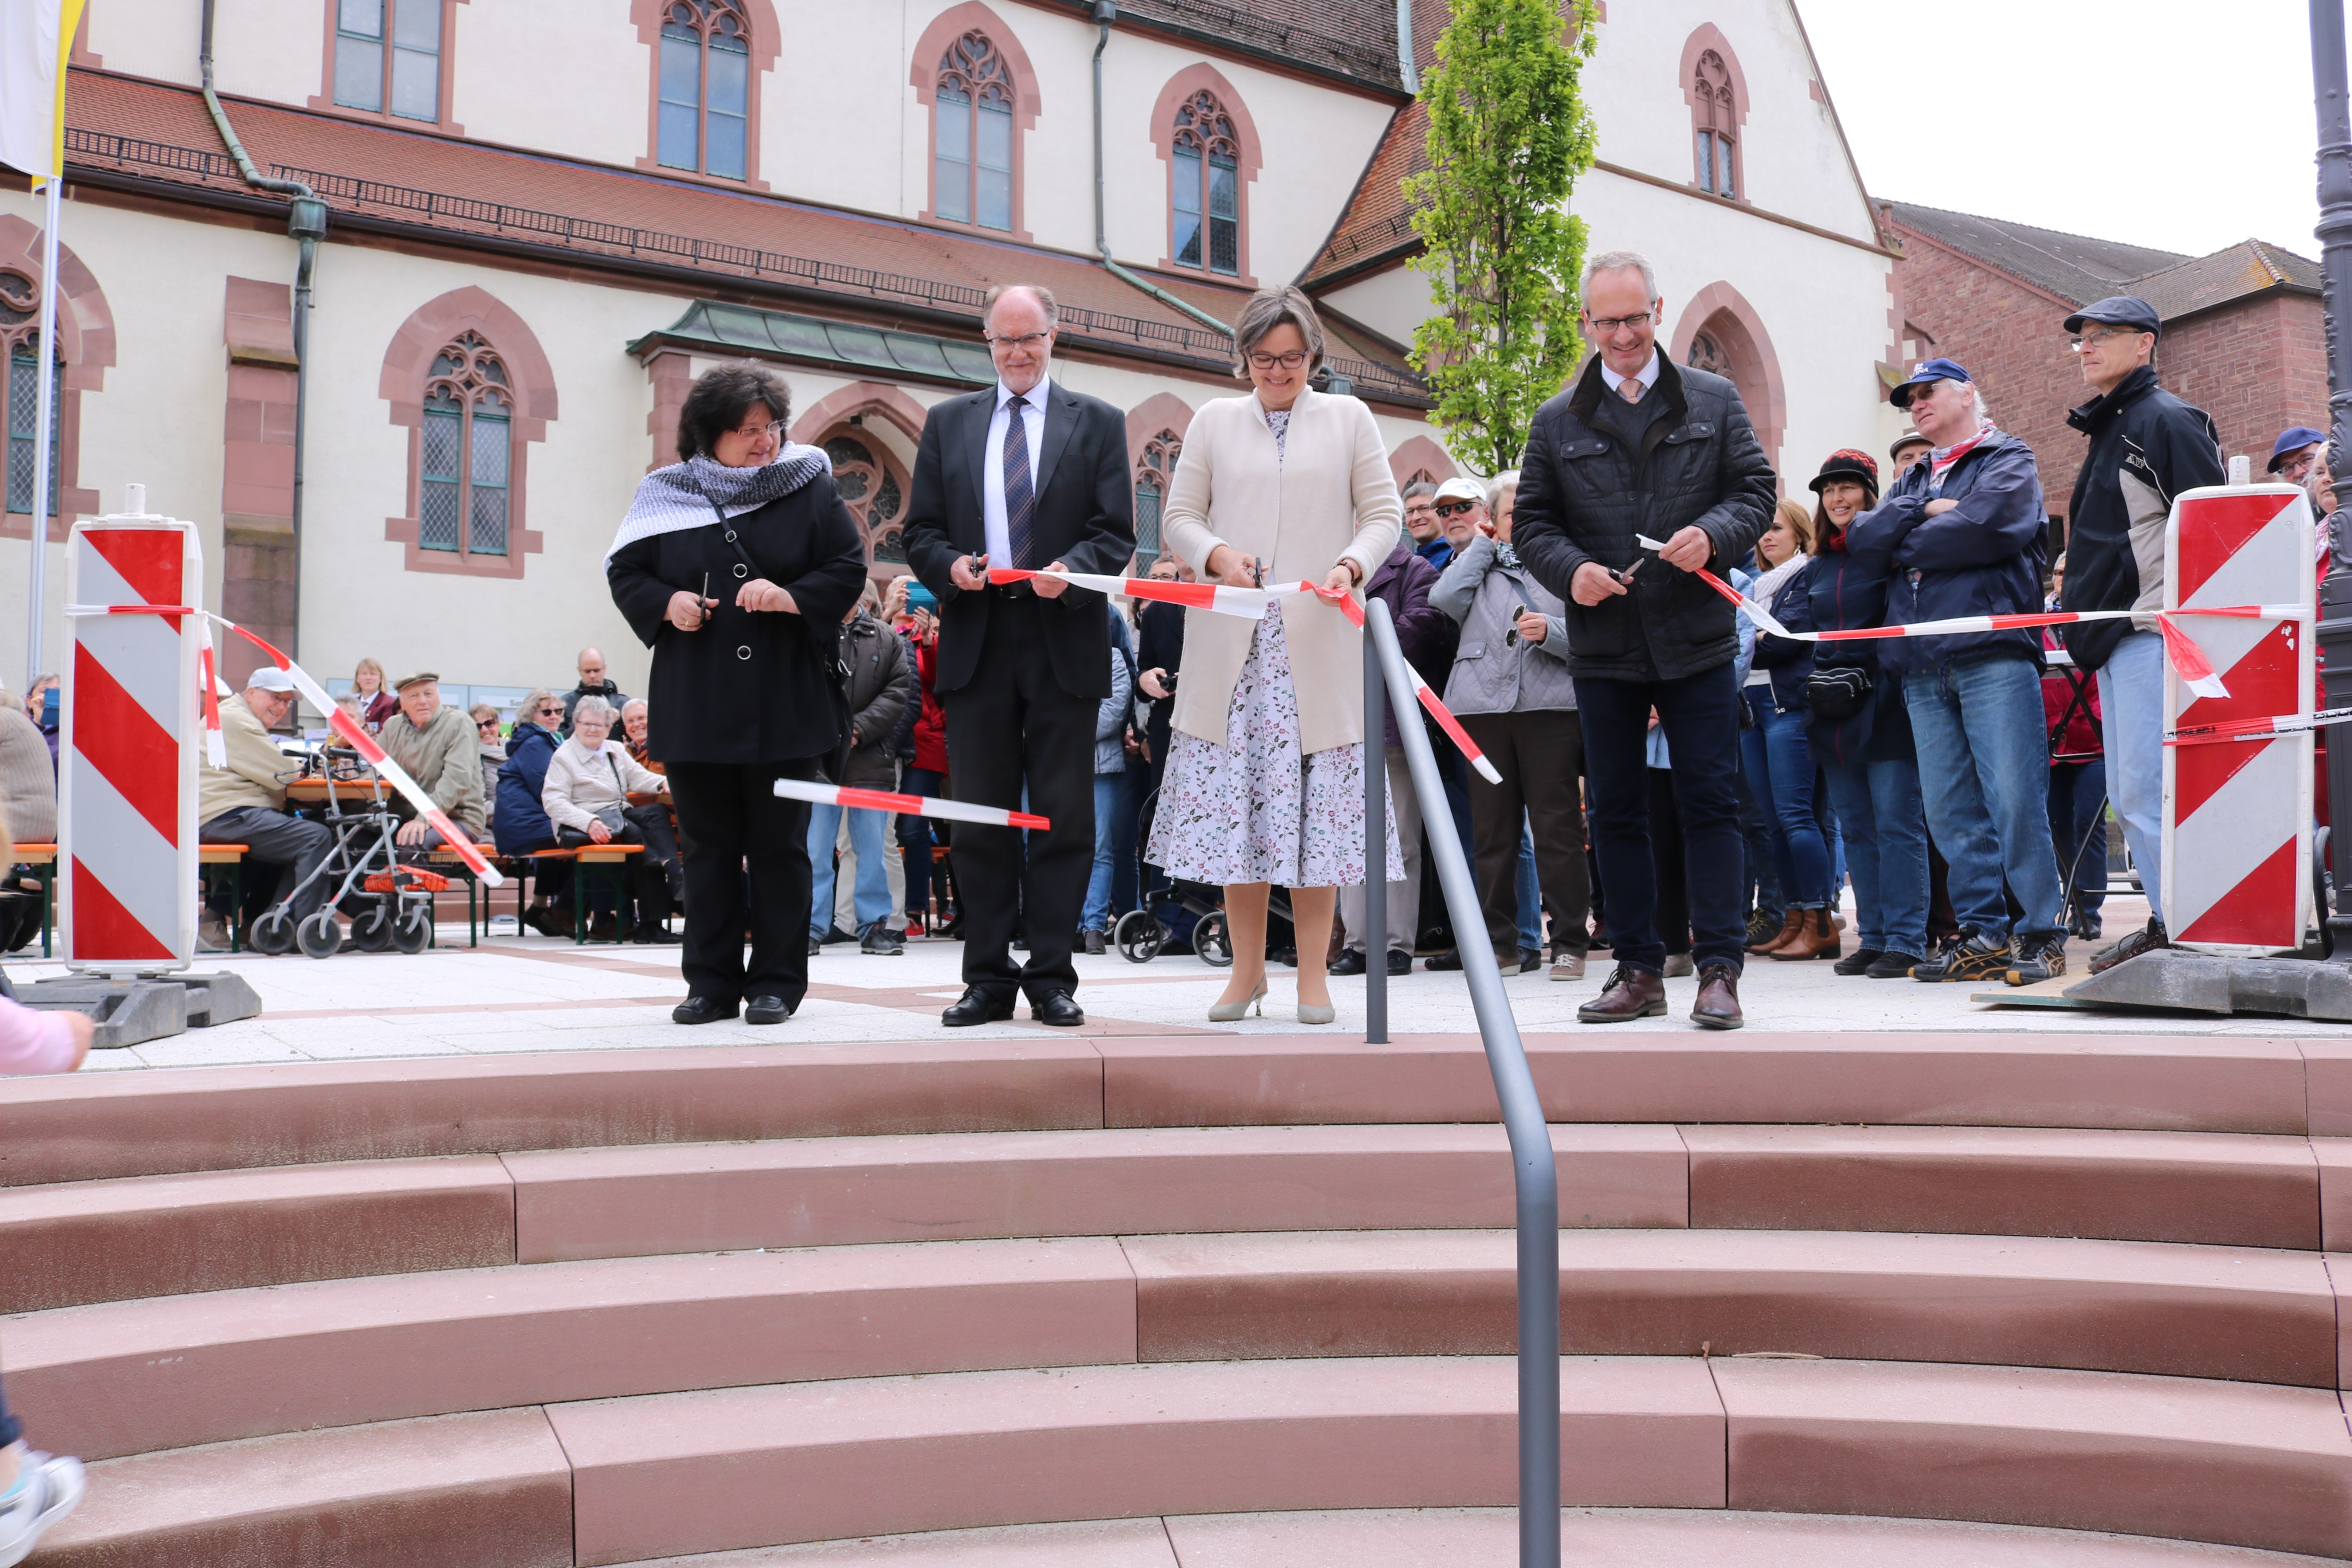  Mit dem offiziellen Banddurchschnitt war die Bachbühne für die Besucher frei gegeben und der Kirchplatz eröffnet 